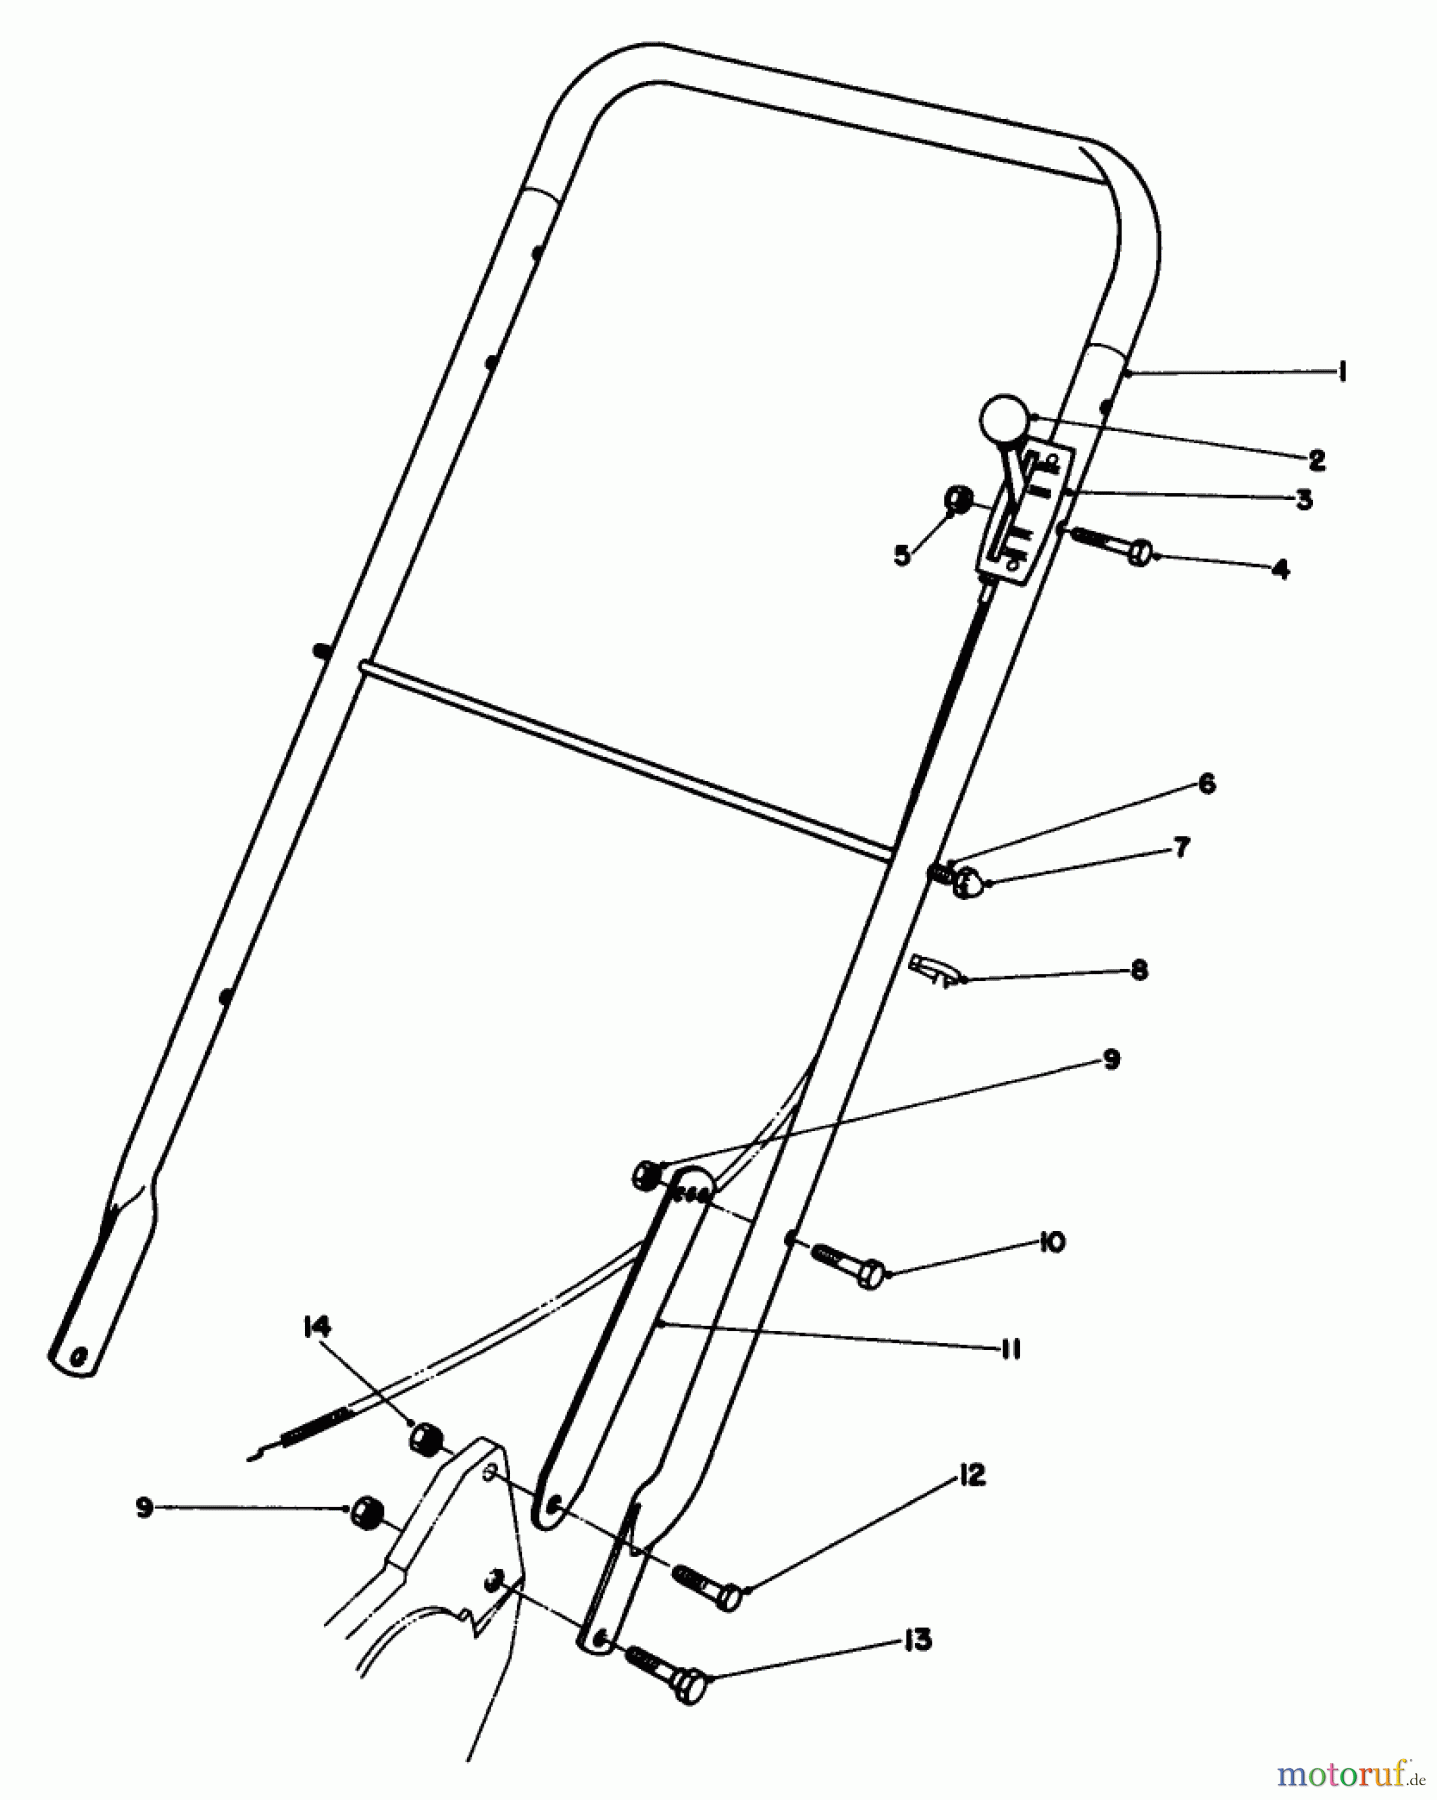  Toro Neu Mowers, Walk-Behind Seite 2 22015 - Toro Lawnmower, 1985 (5000001-5999999) HANDLE ASSEMBLY (MODEL 22015)